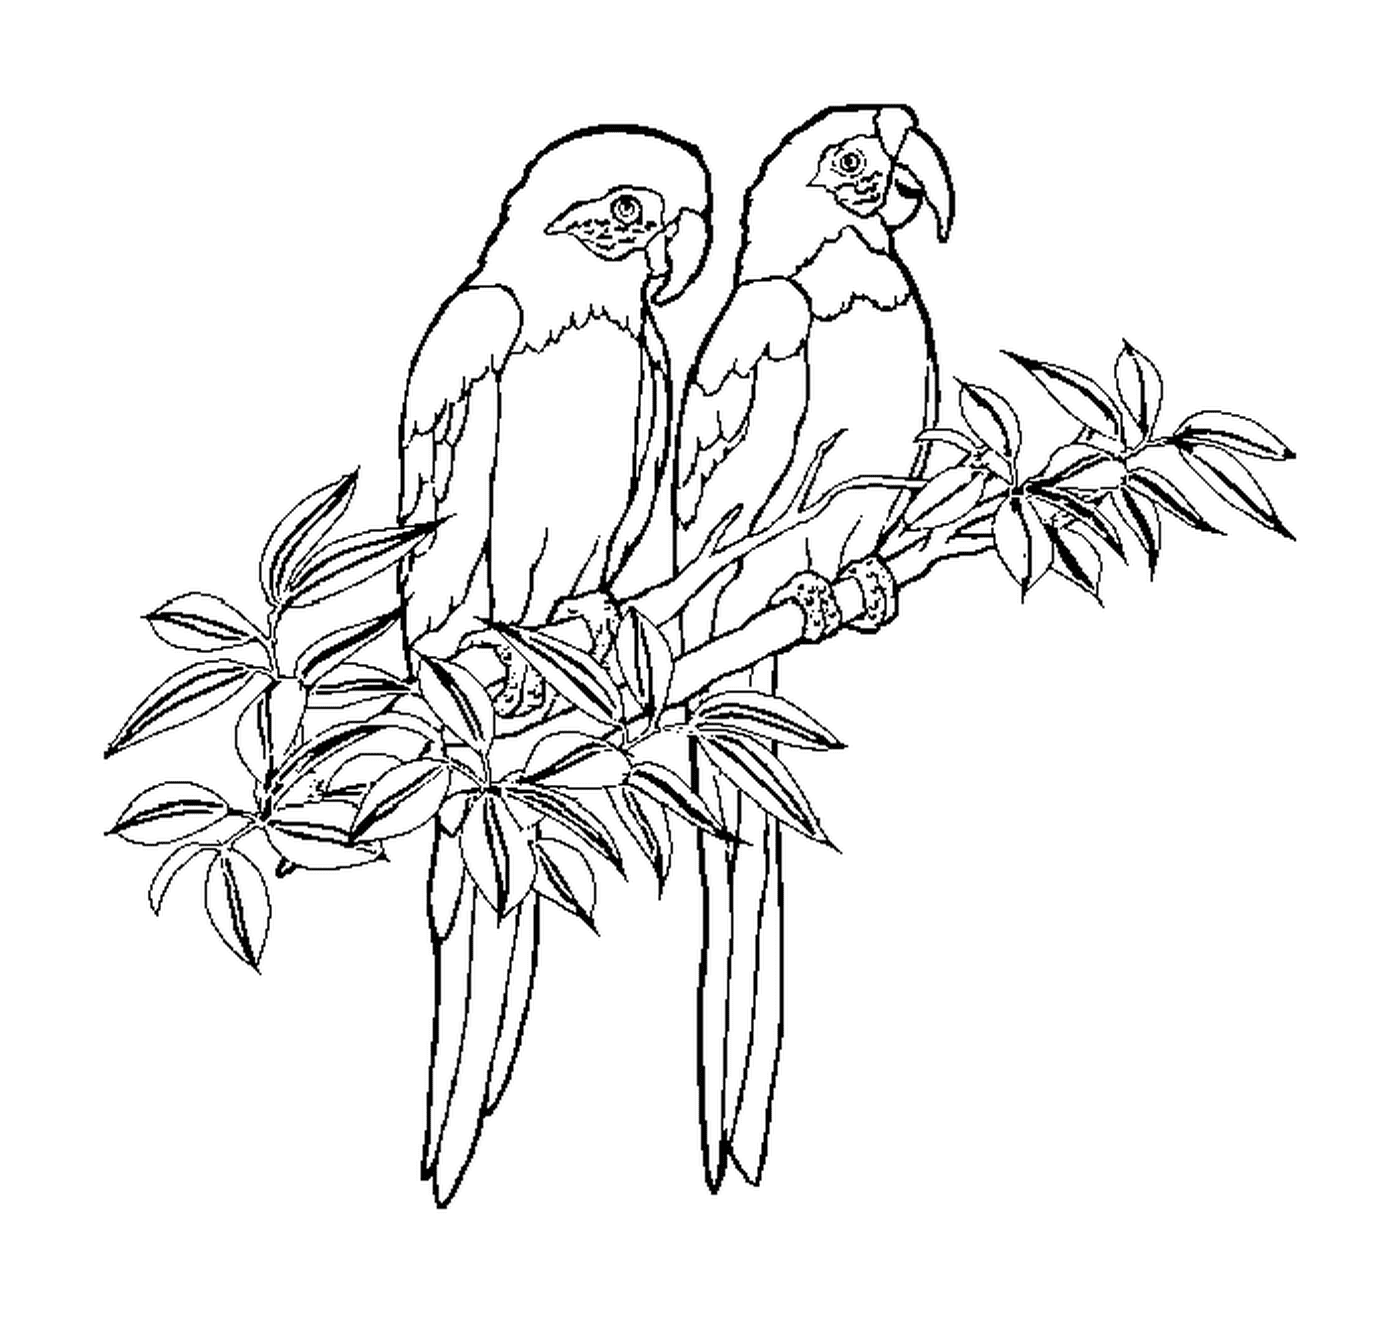  Dois papagaios empolados juntos 